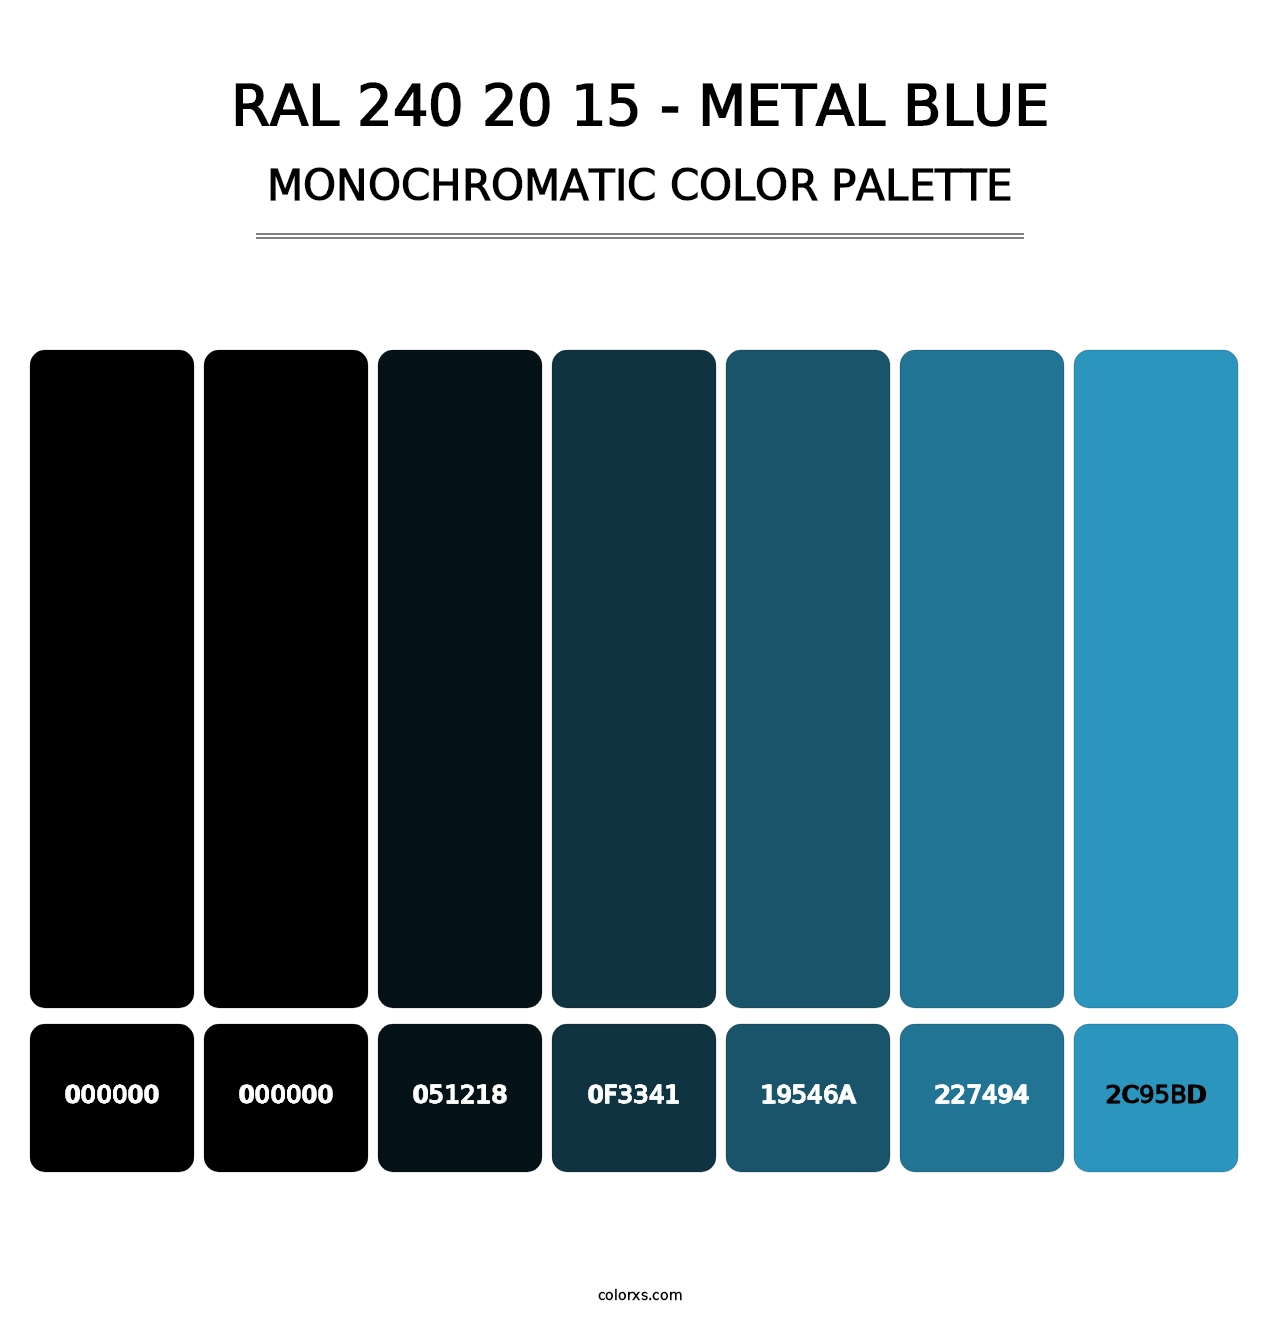 RAL 240 20 15 - Metal Blue - Monochromatic Color Palette